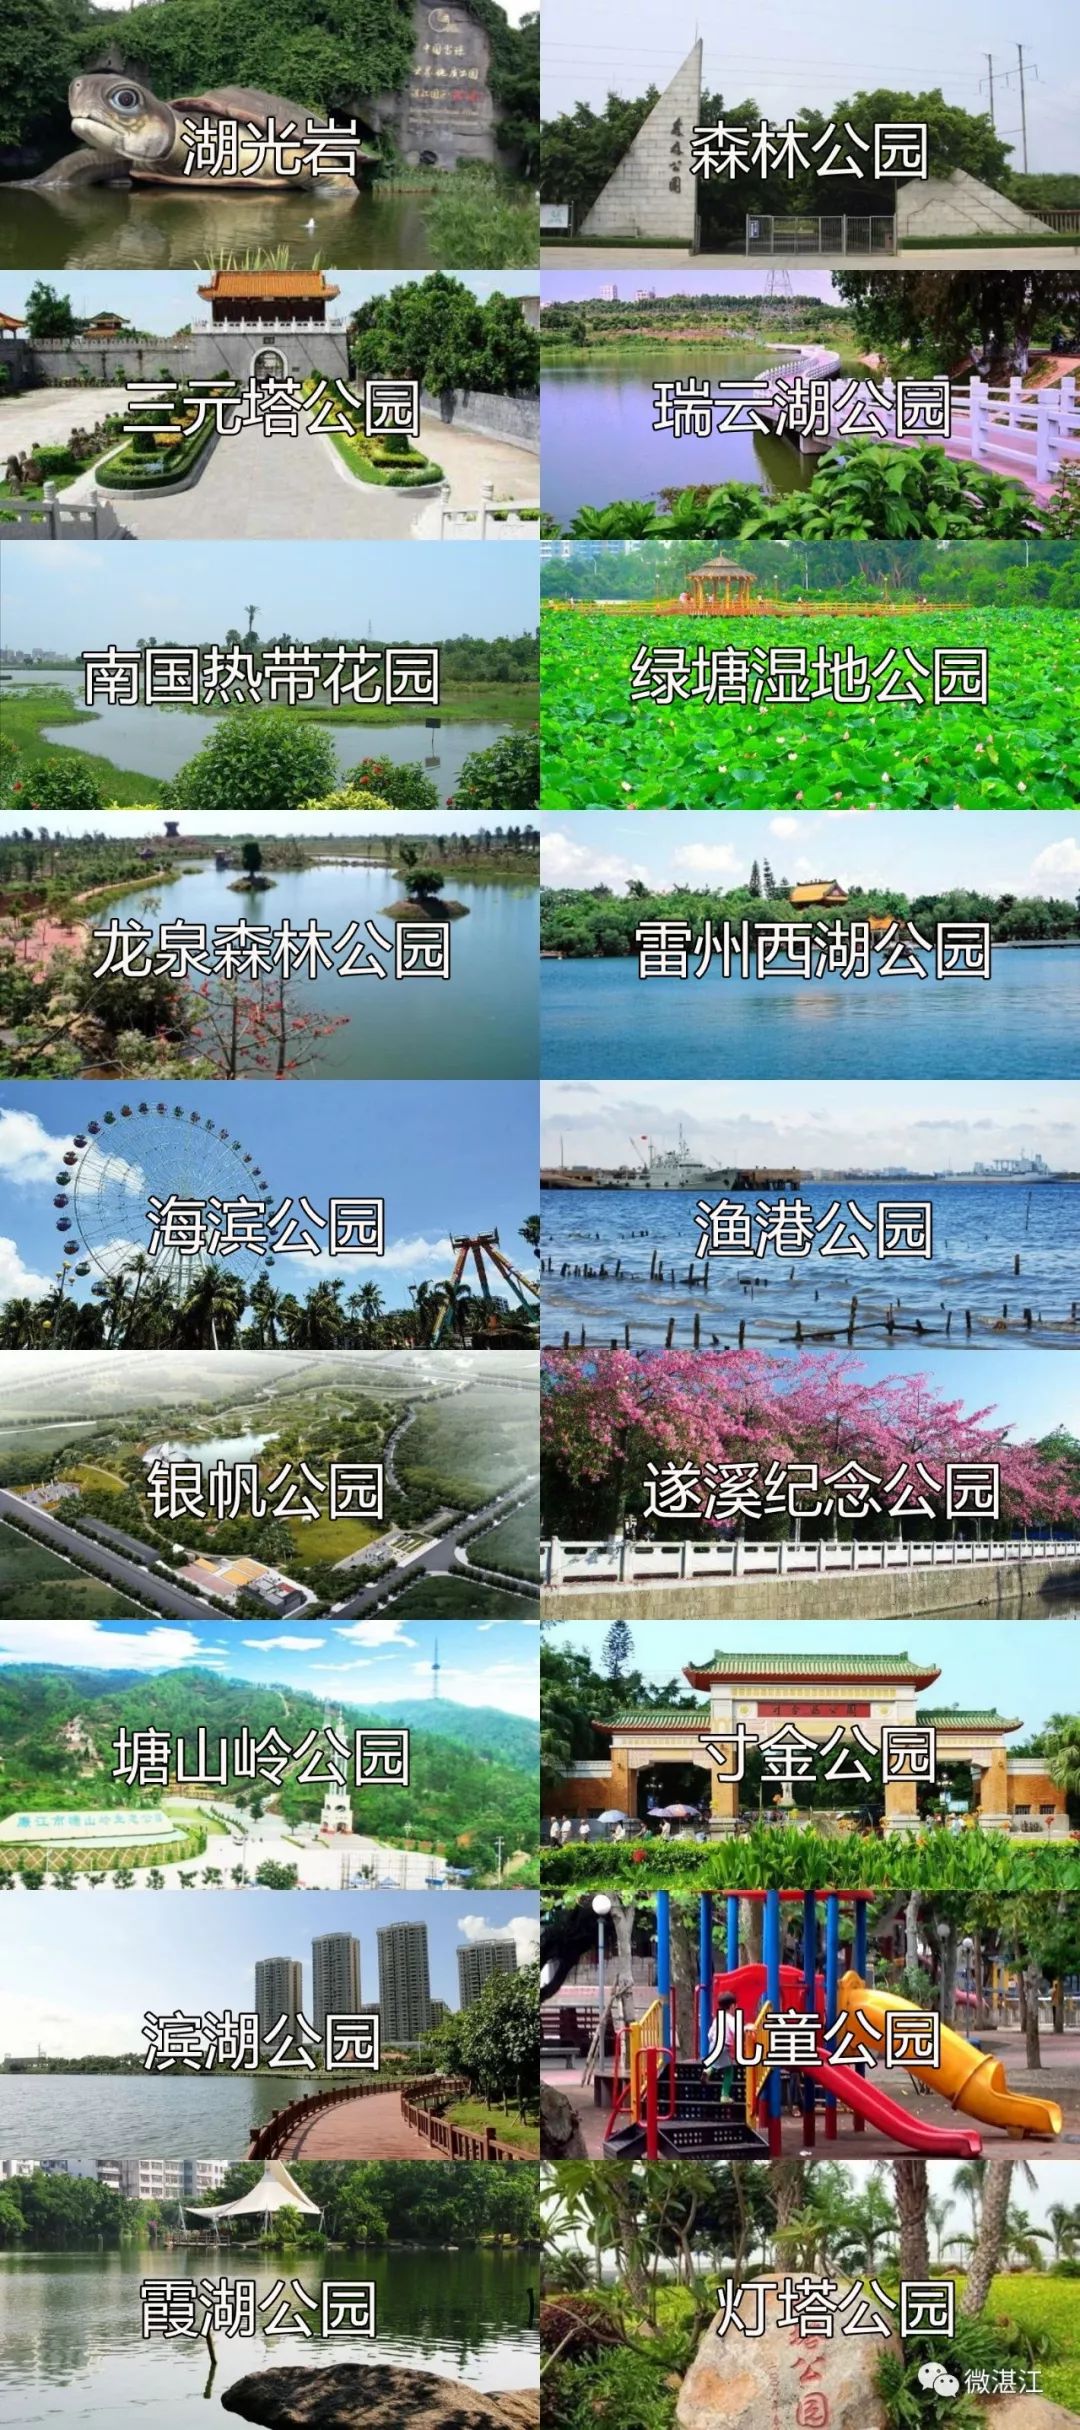 我们有这么多景点! 光知名的公园就十几二十座 湛江的古乡